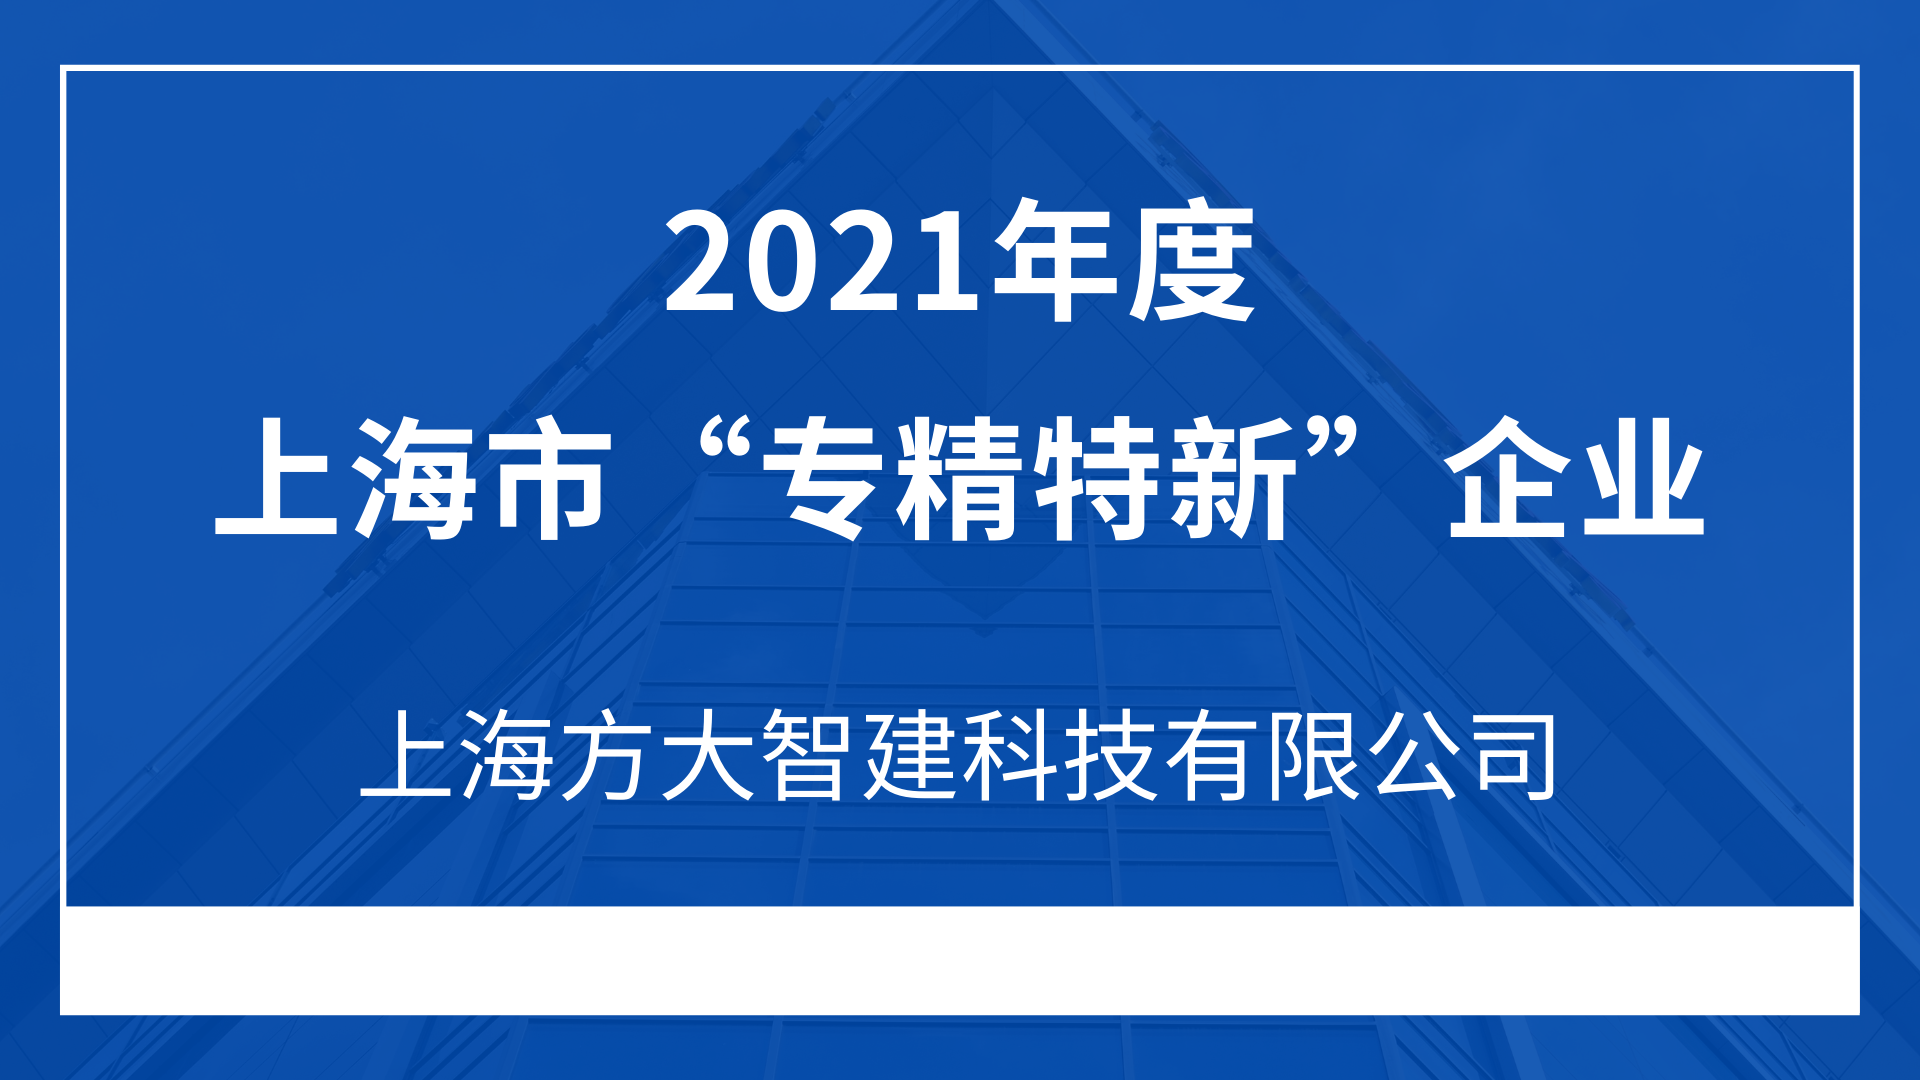 上海方大智建科技有限公司入选2021年度上海市“专精特新”企业